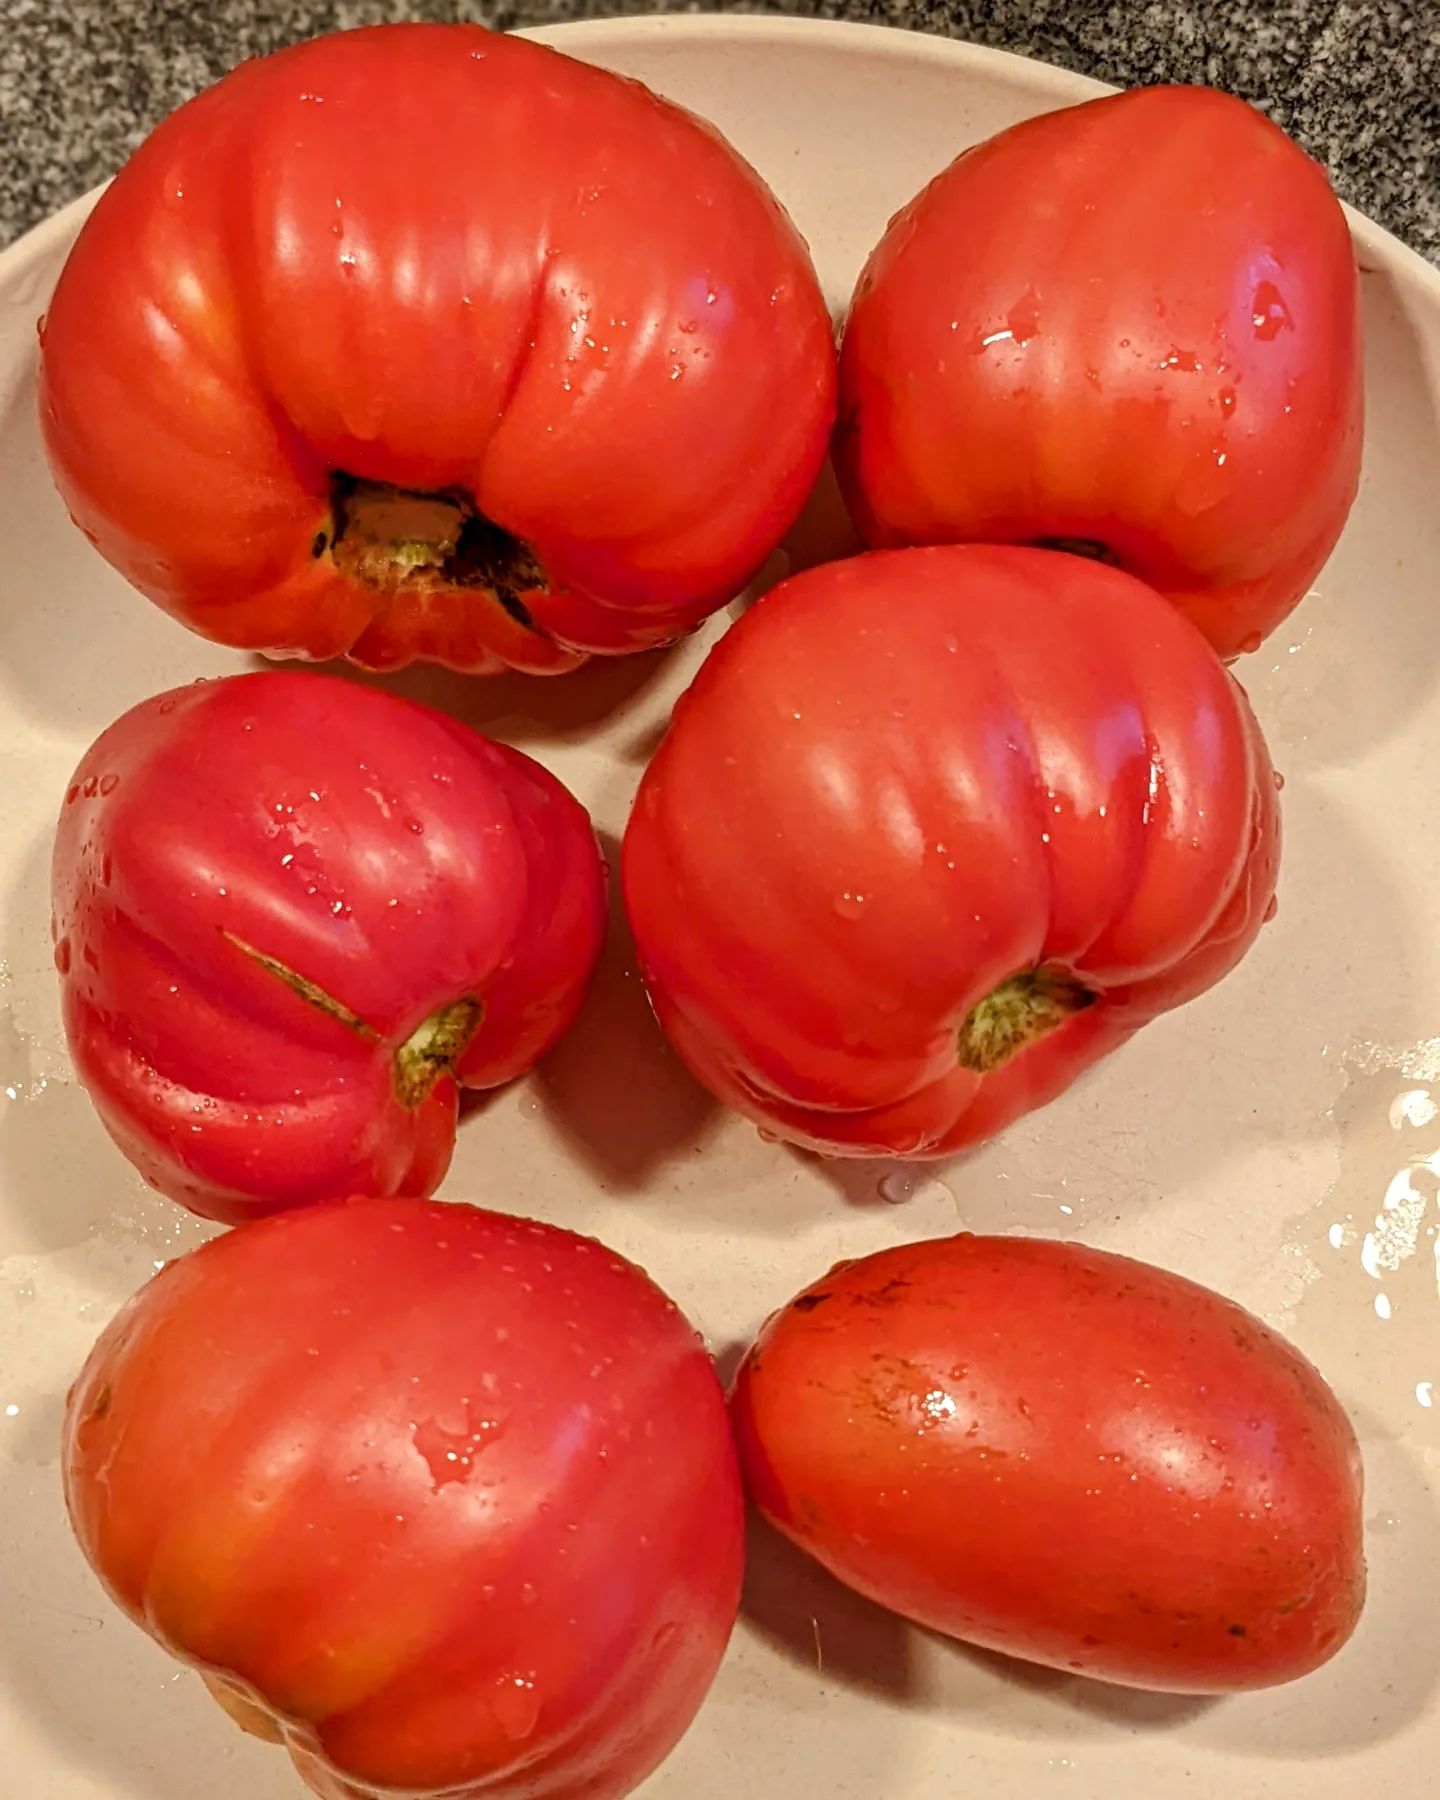 Tonight's #tomato #harvest